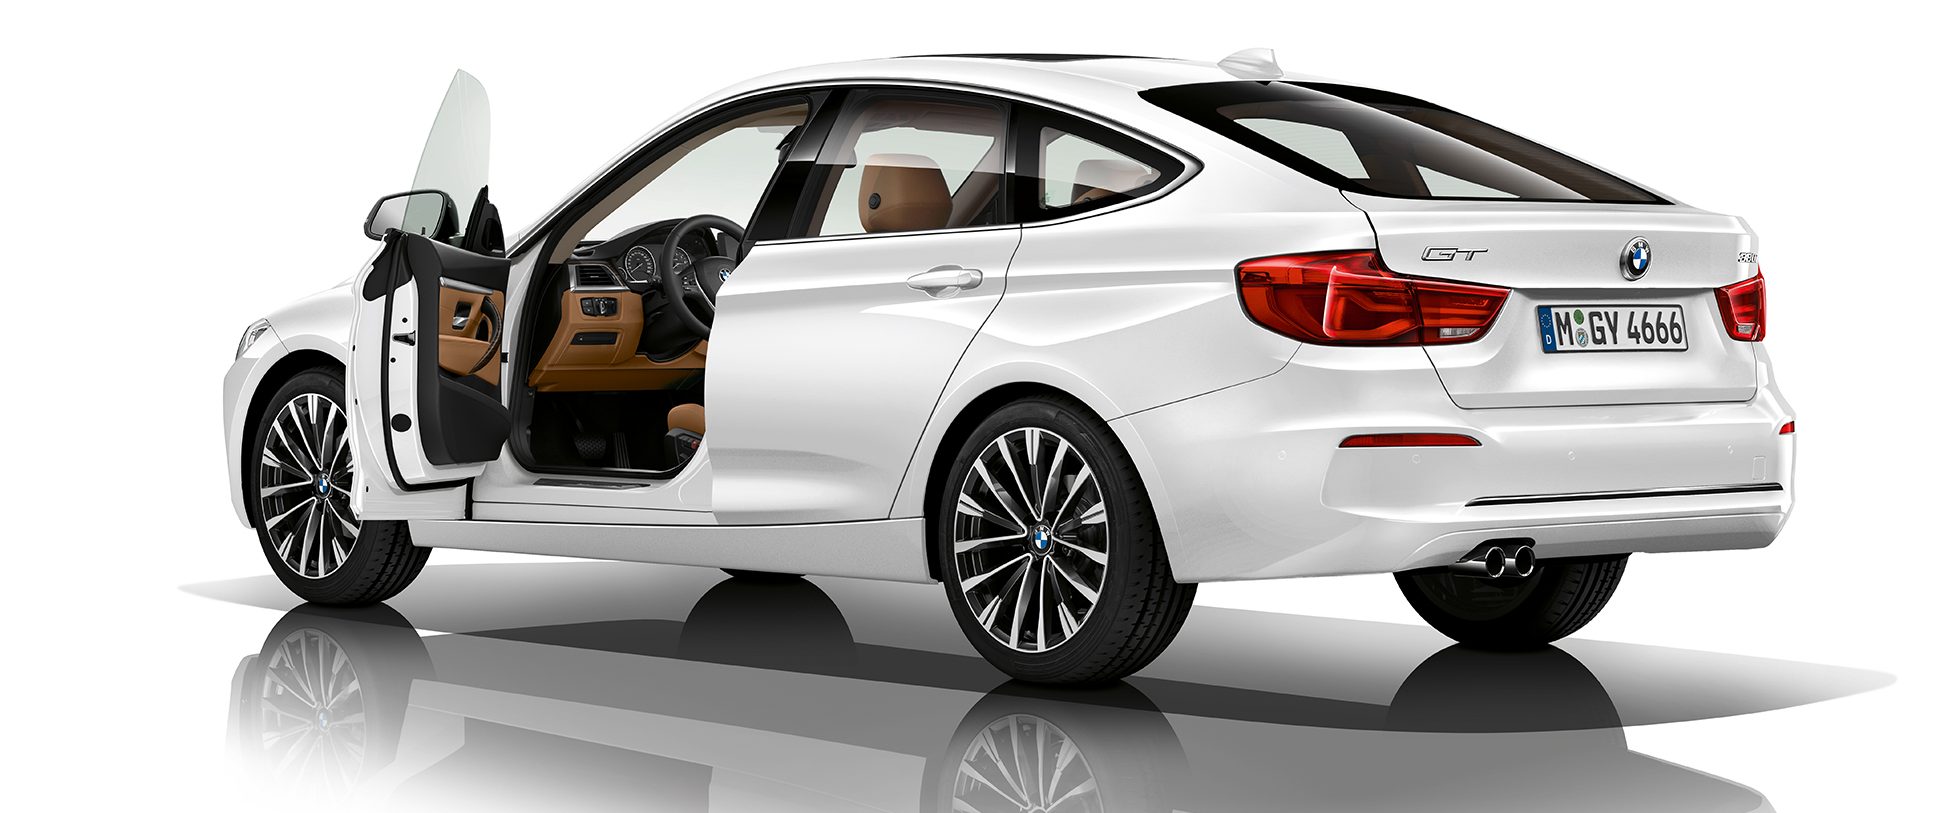 BMW Serie 3 Gran Turismo dimensioni